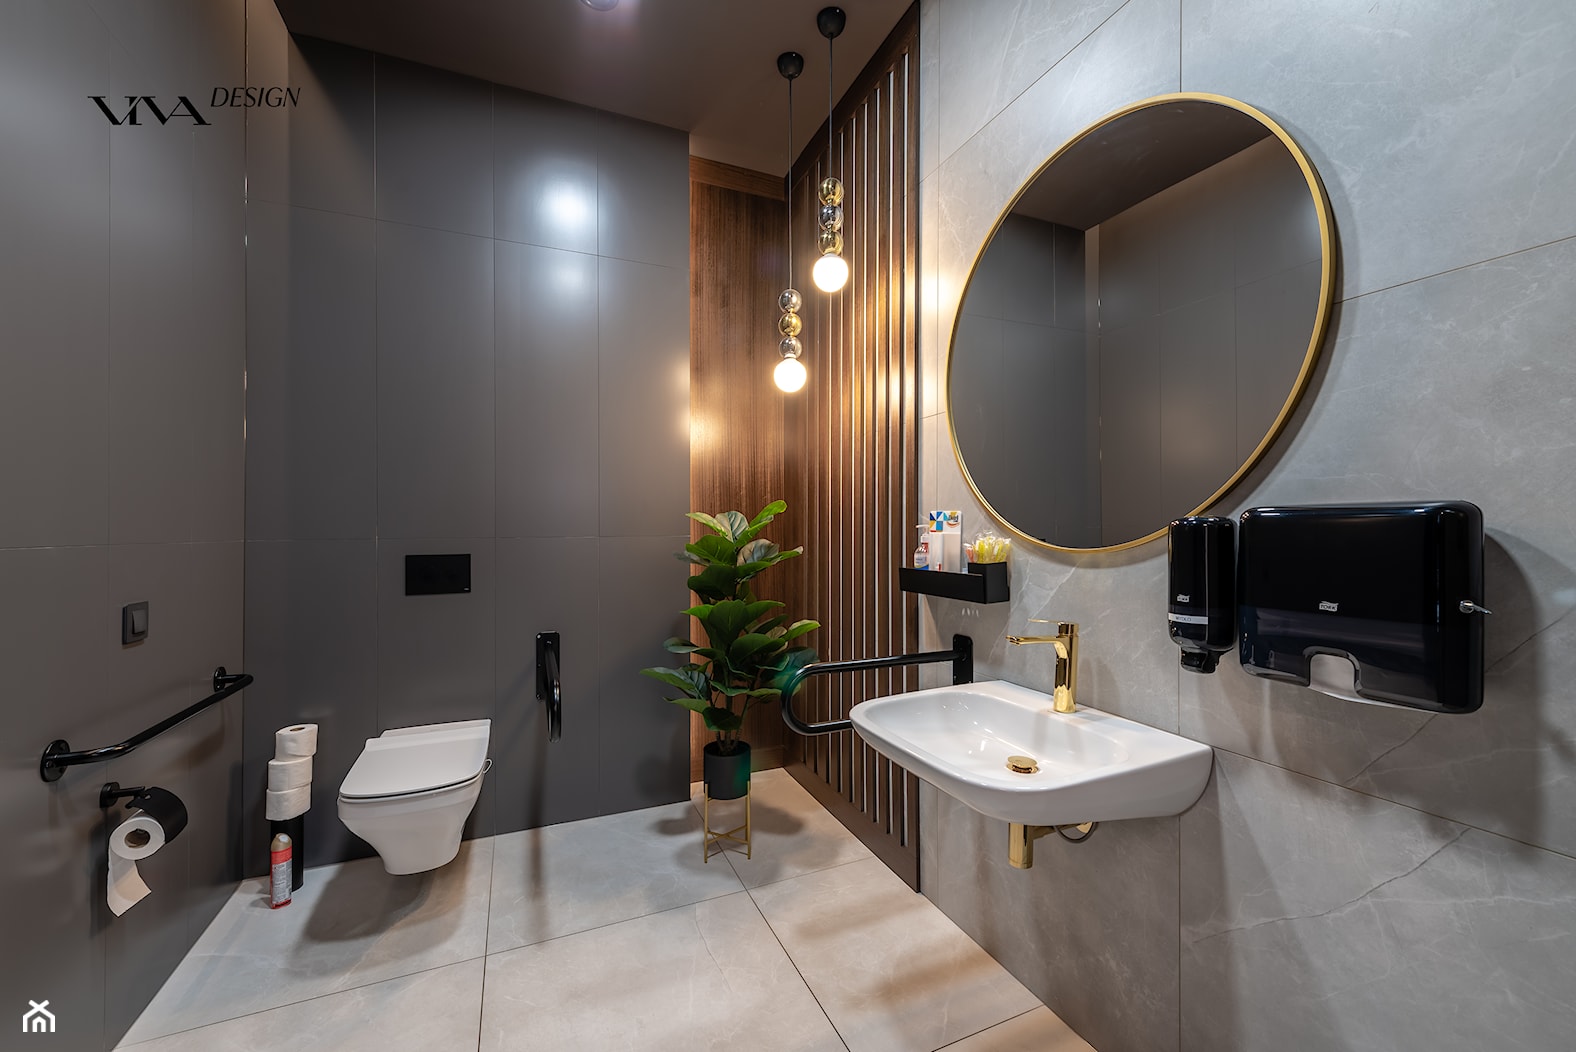 Nowoczesna łazienka dla pacjentów z lamelowymi wstawkami - zdjęcie od Viva Design Rzeszów - Homebook